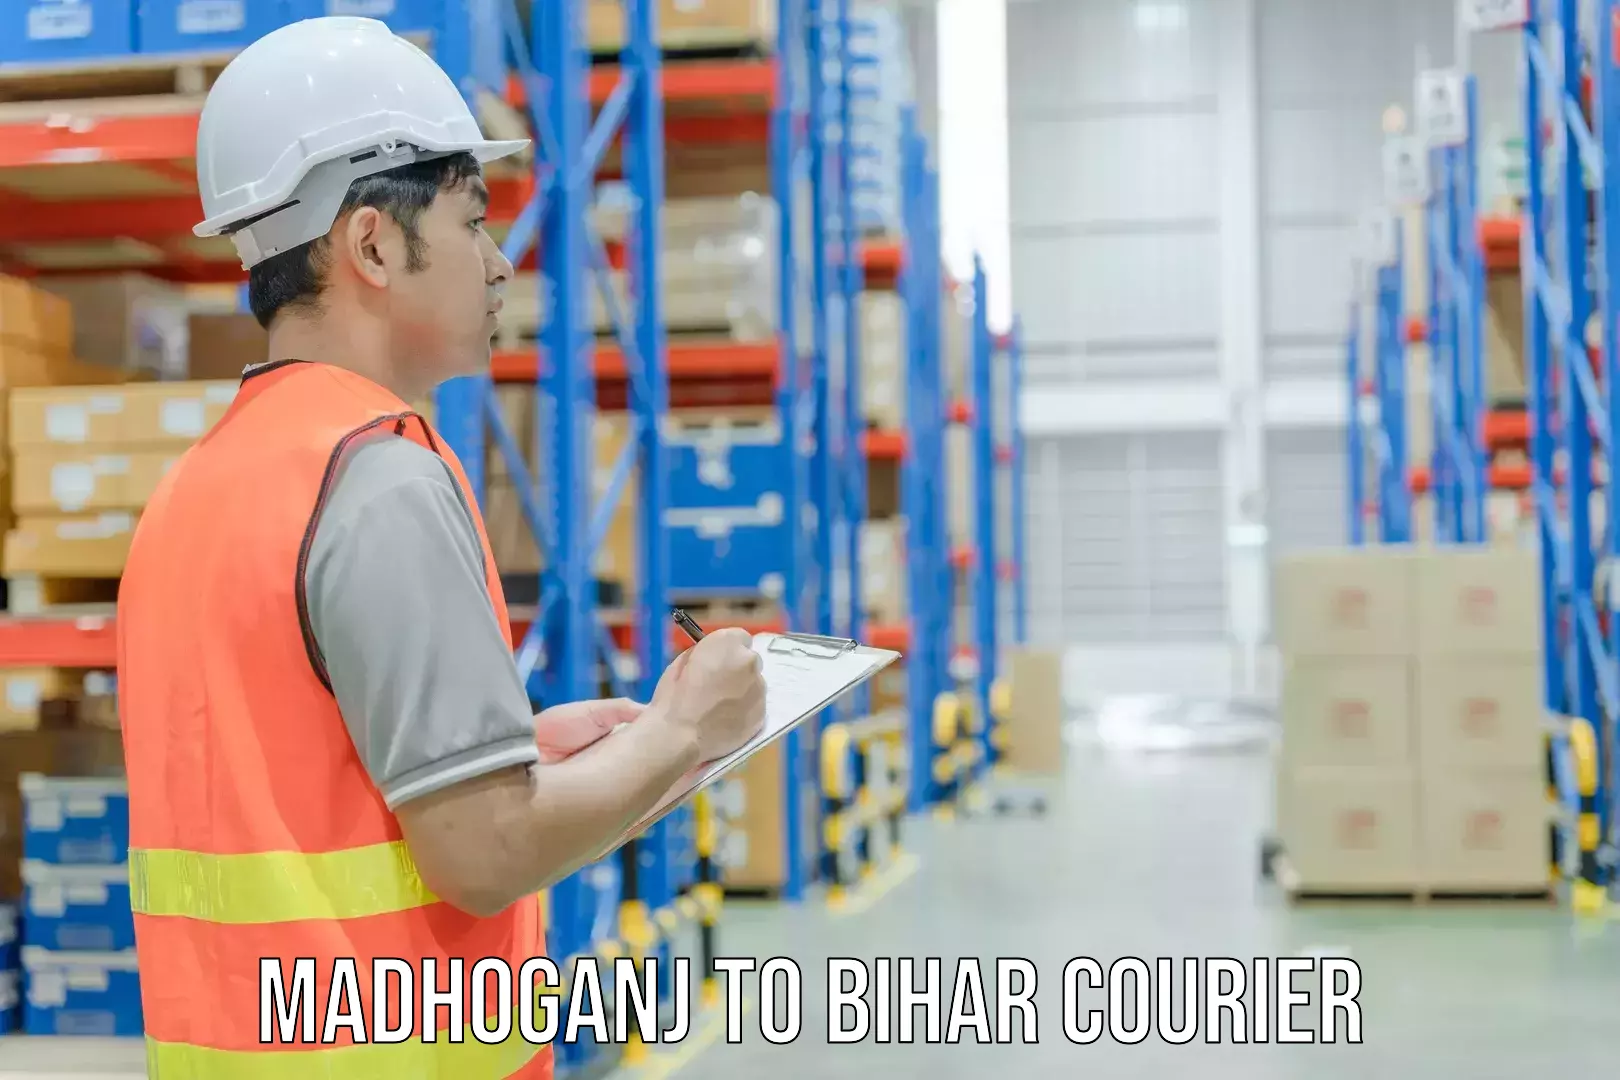 Customer-oriented courier services Madhoganj to Bharwara